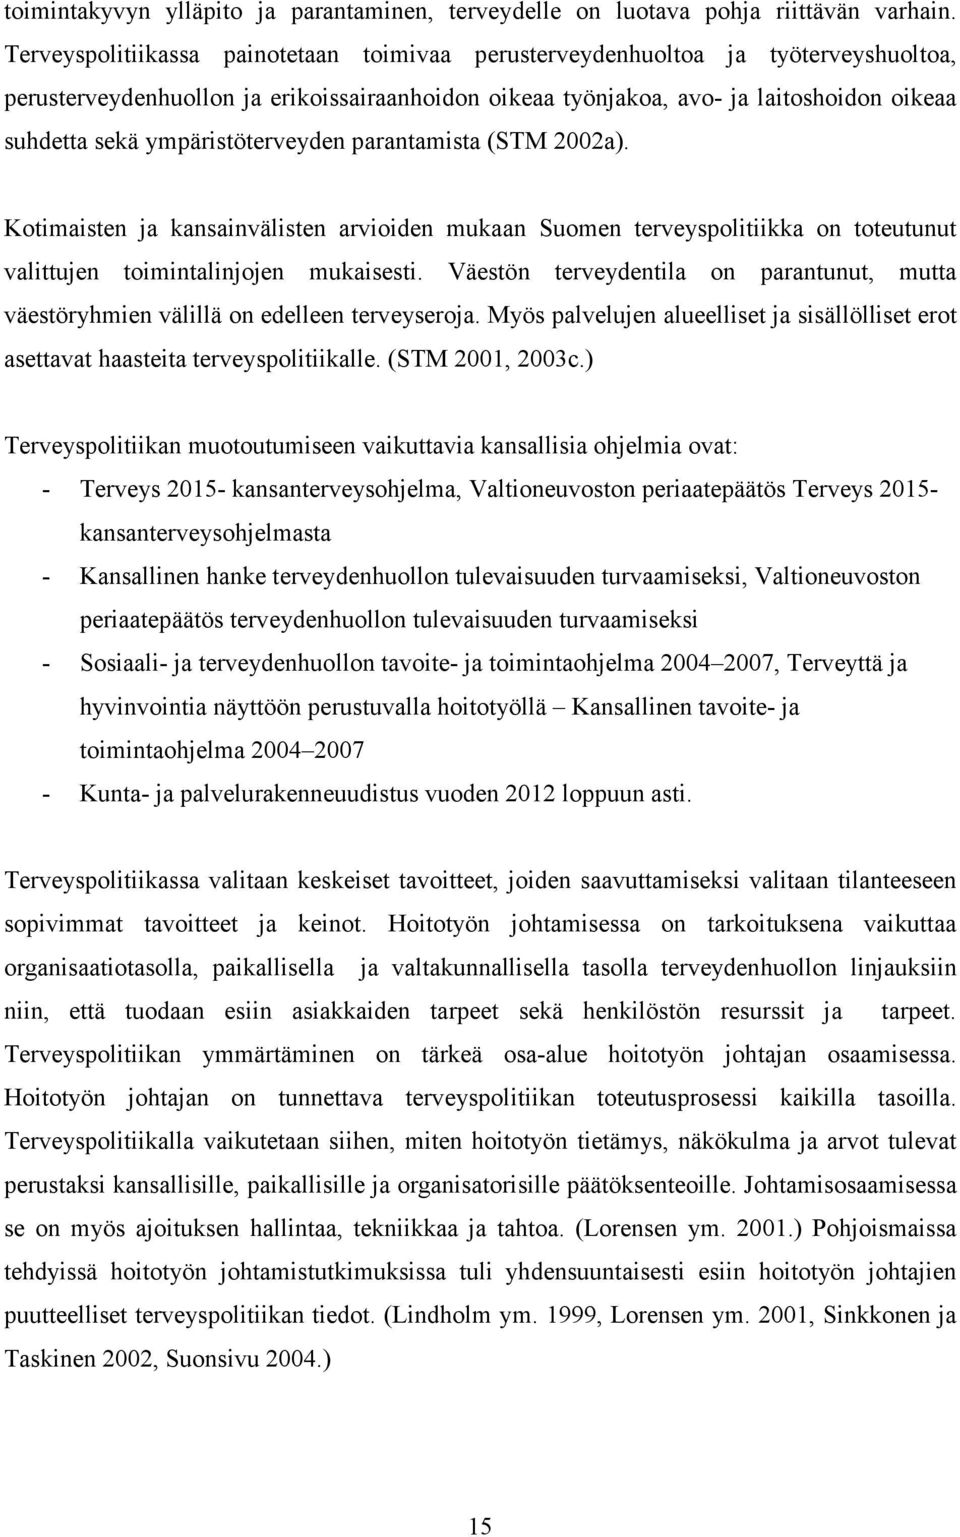 ympäristöterveyden parantamista (STM 2002a). Kotimaisten ja kansainvälisten arvioiden mukaan Suomen terveyspolitiikka on toteutunut valittujen toimintalinjojen mukaisesti.